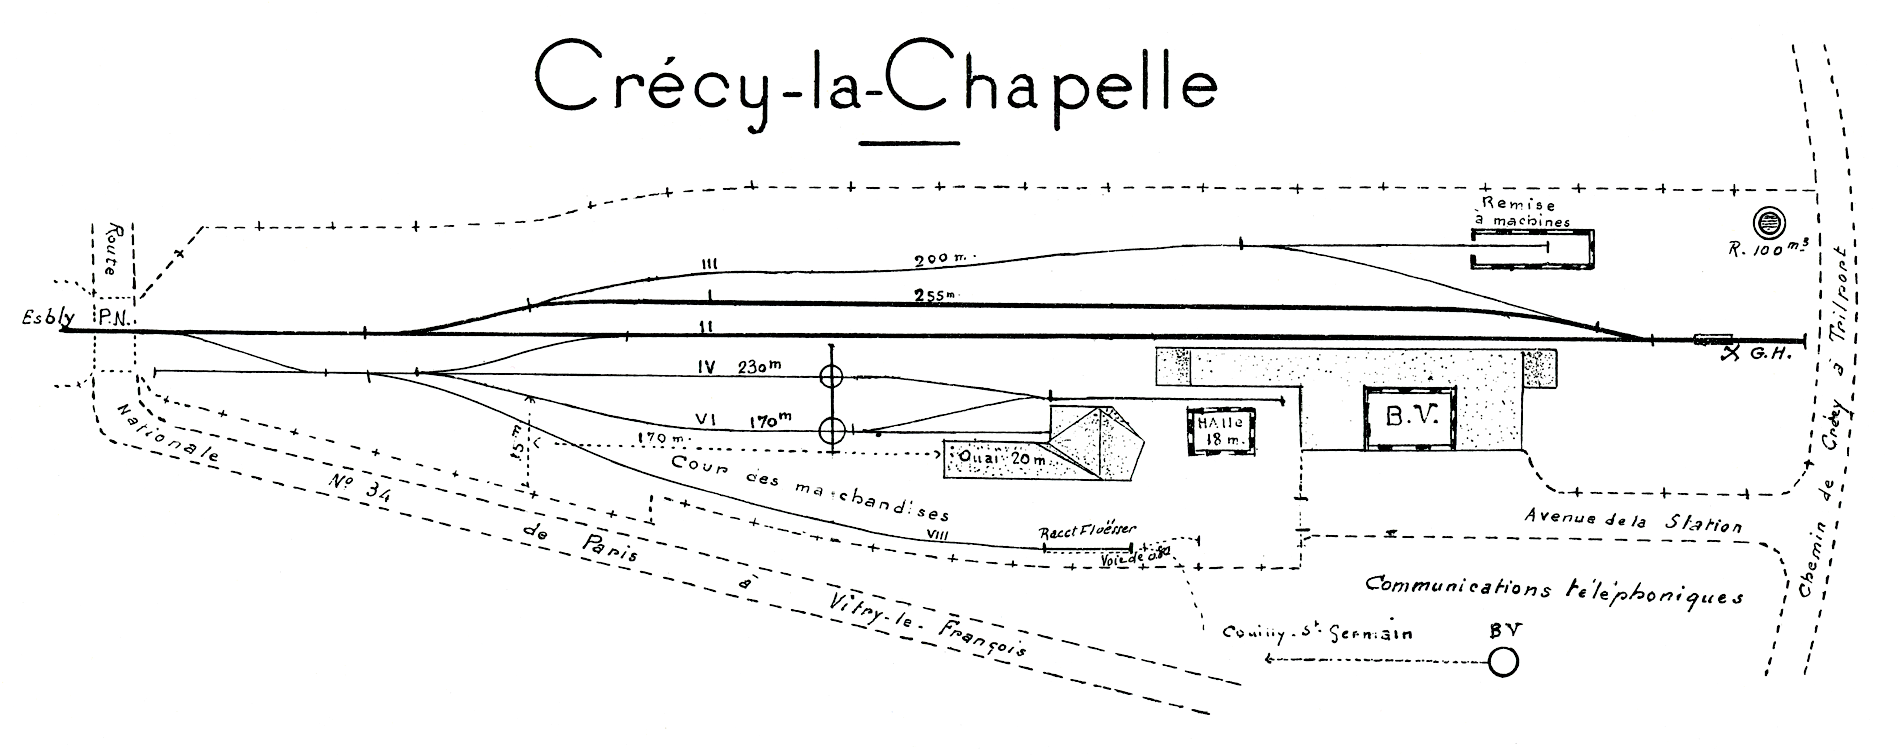 CHEMINS DE FER DE L'EST • CROQUIS DES GARES • CRÉCY-LA CHAPELLE (1925)